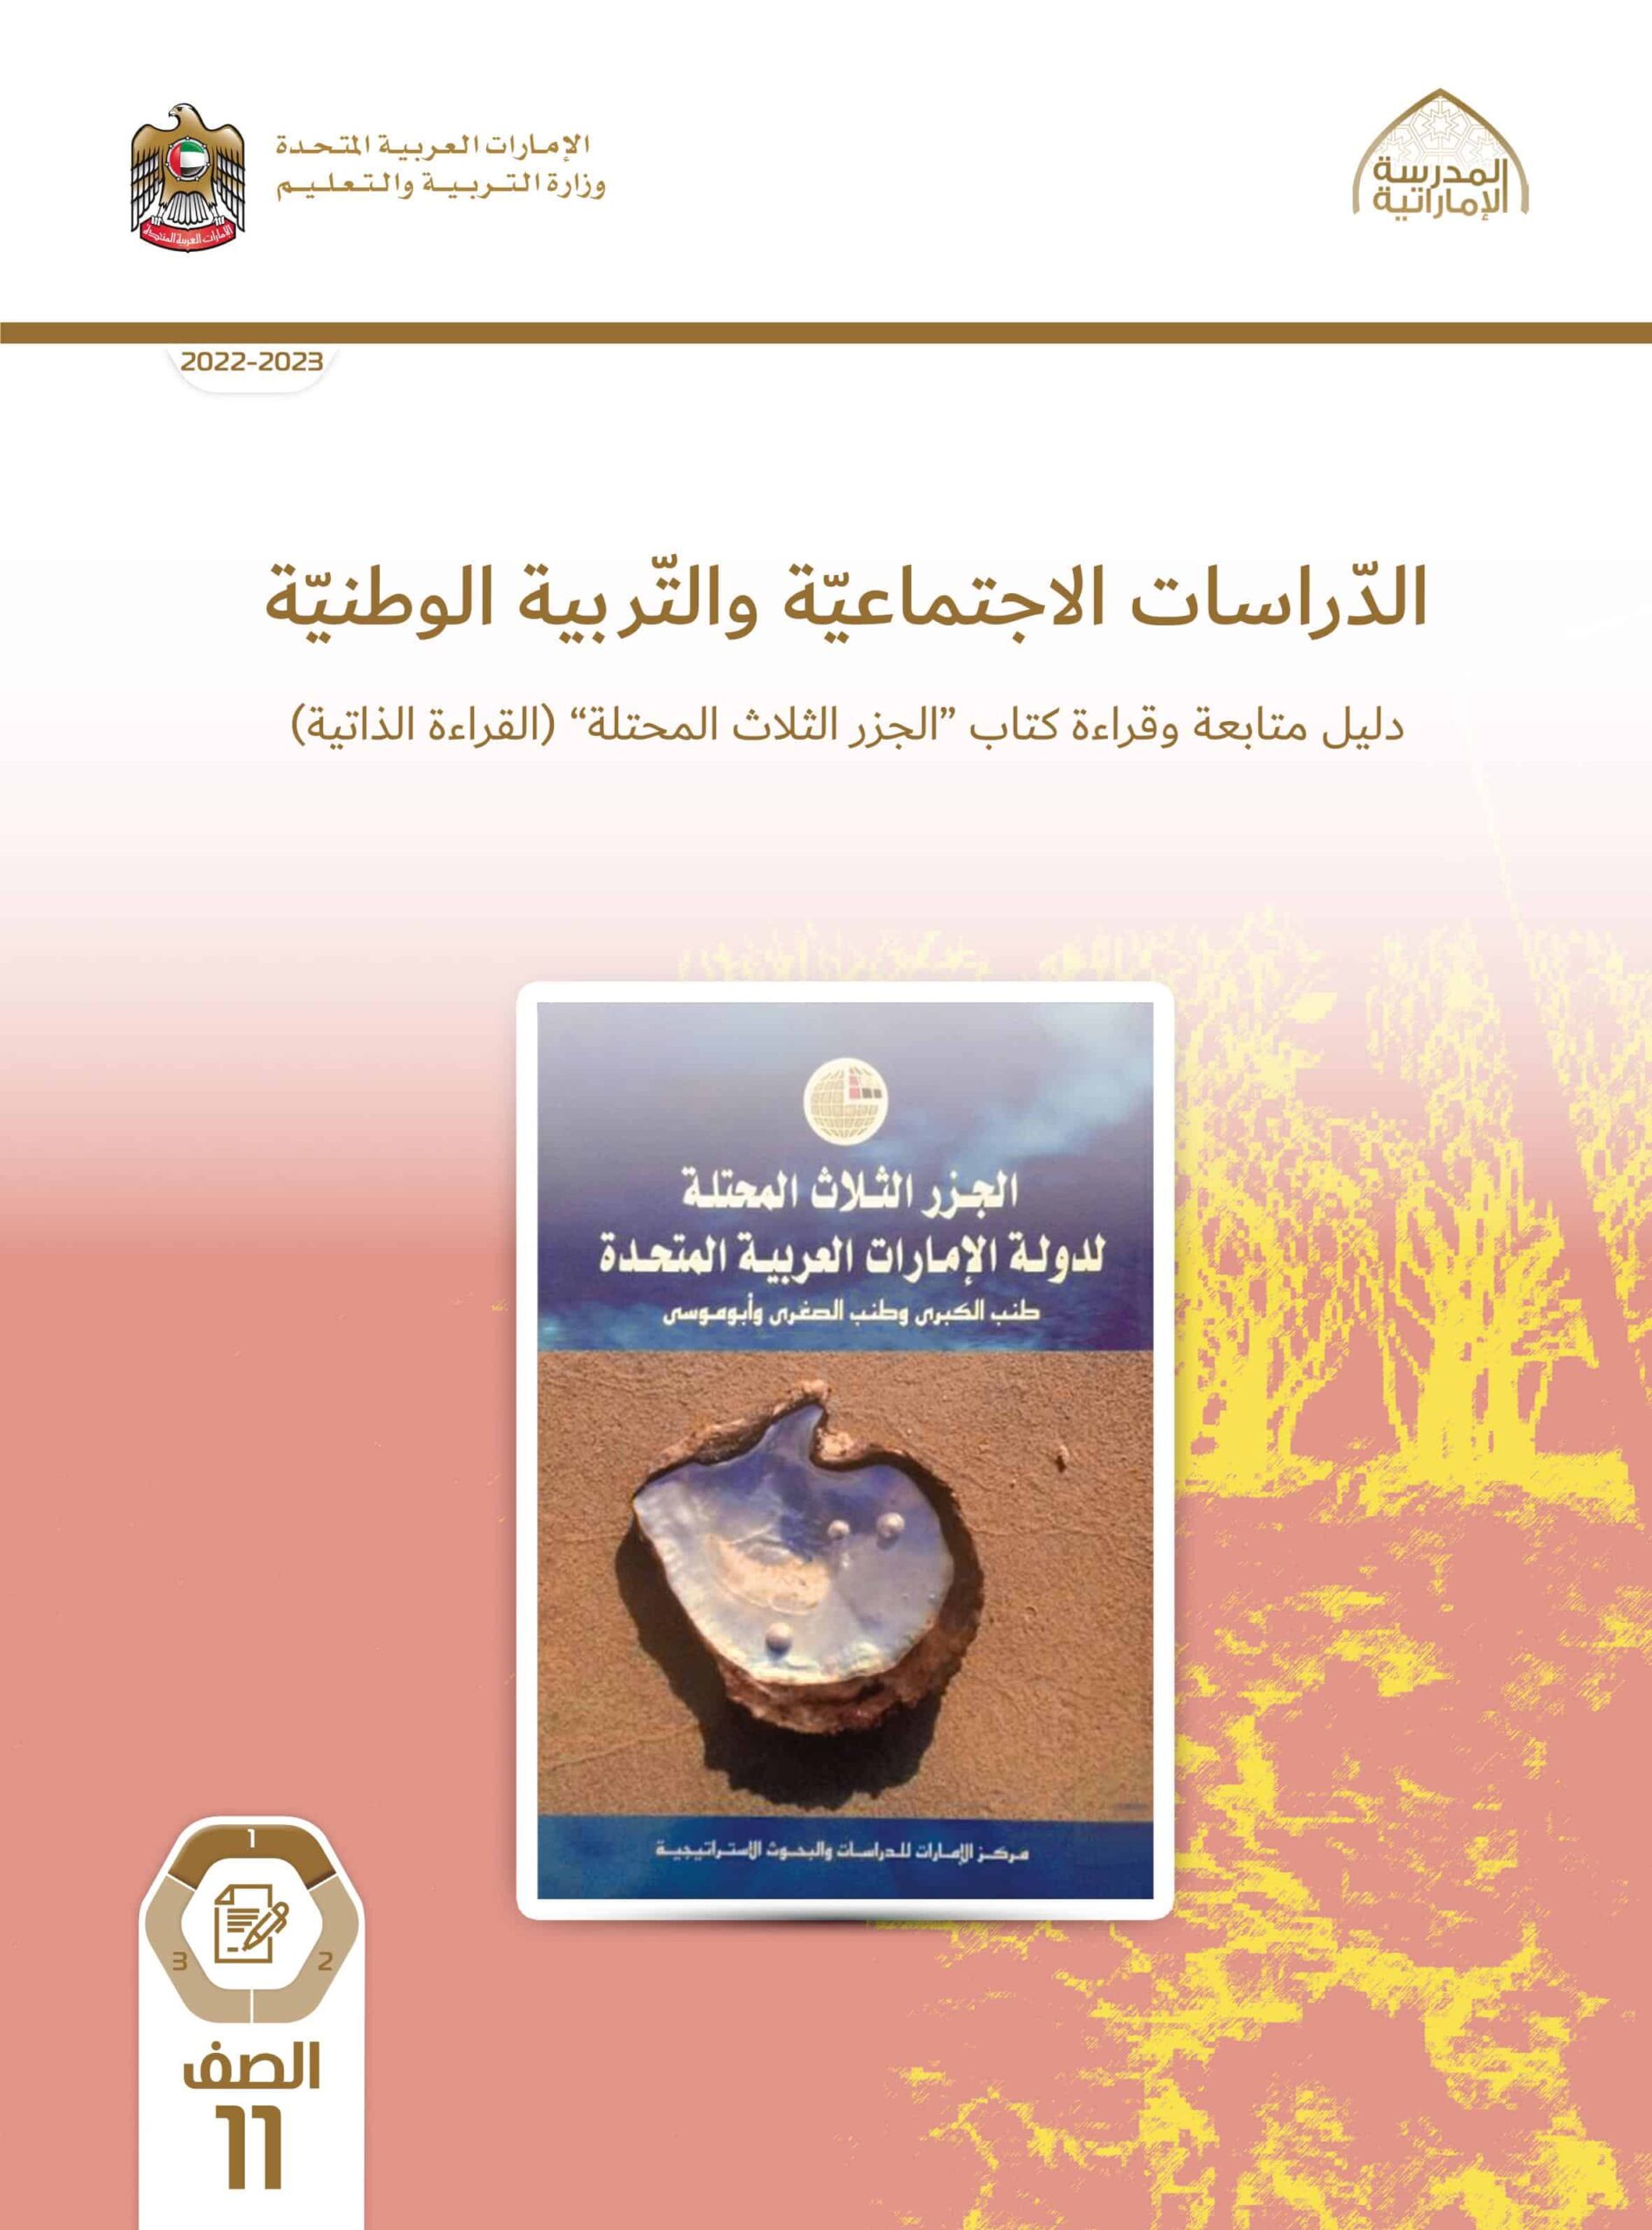 كتاب دليل متابعة وقراءة الجزر الثلاثة المحتلة الدراسات الإجتماعية والتربية الوطنية الصف الحادي عشر الفصل الدراسي الأول 2022-2023